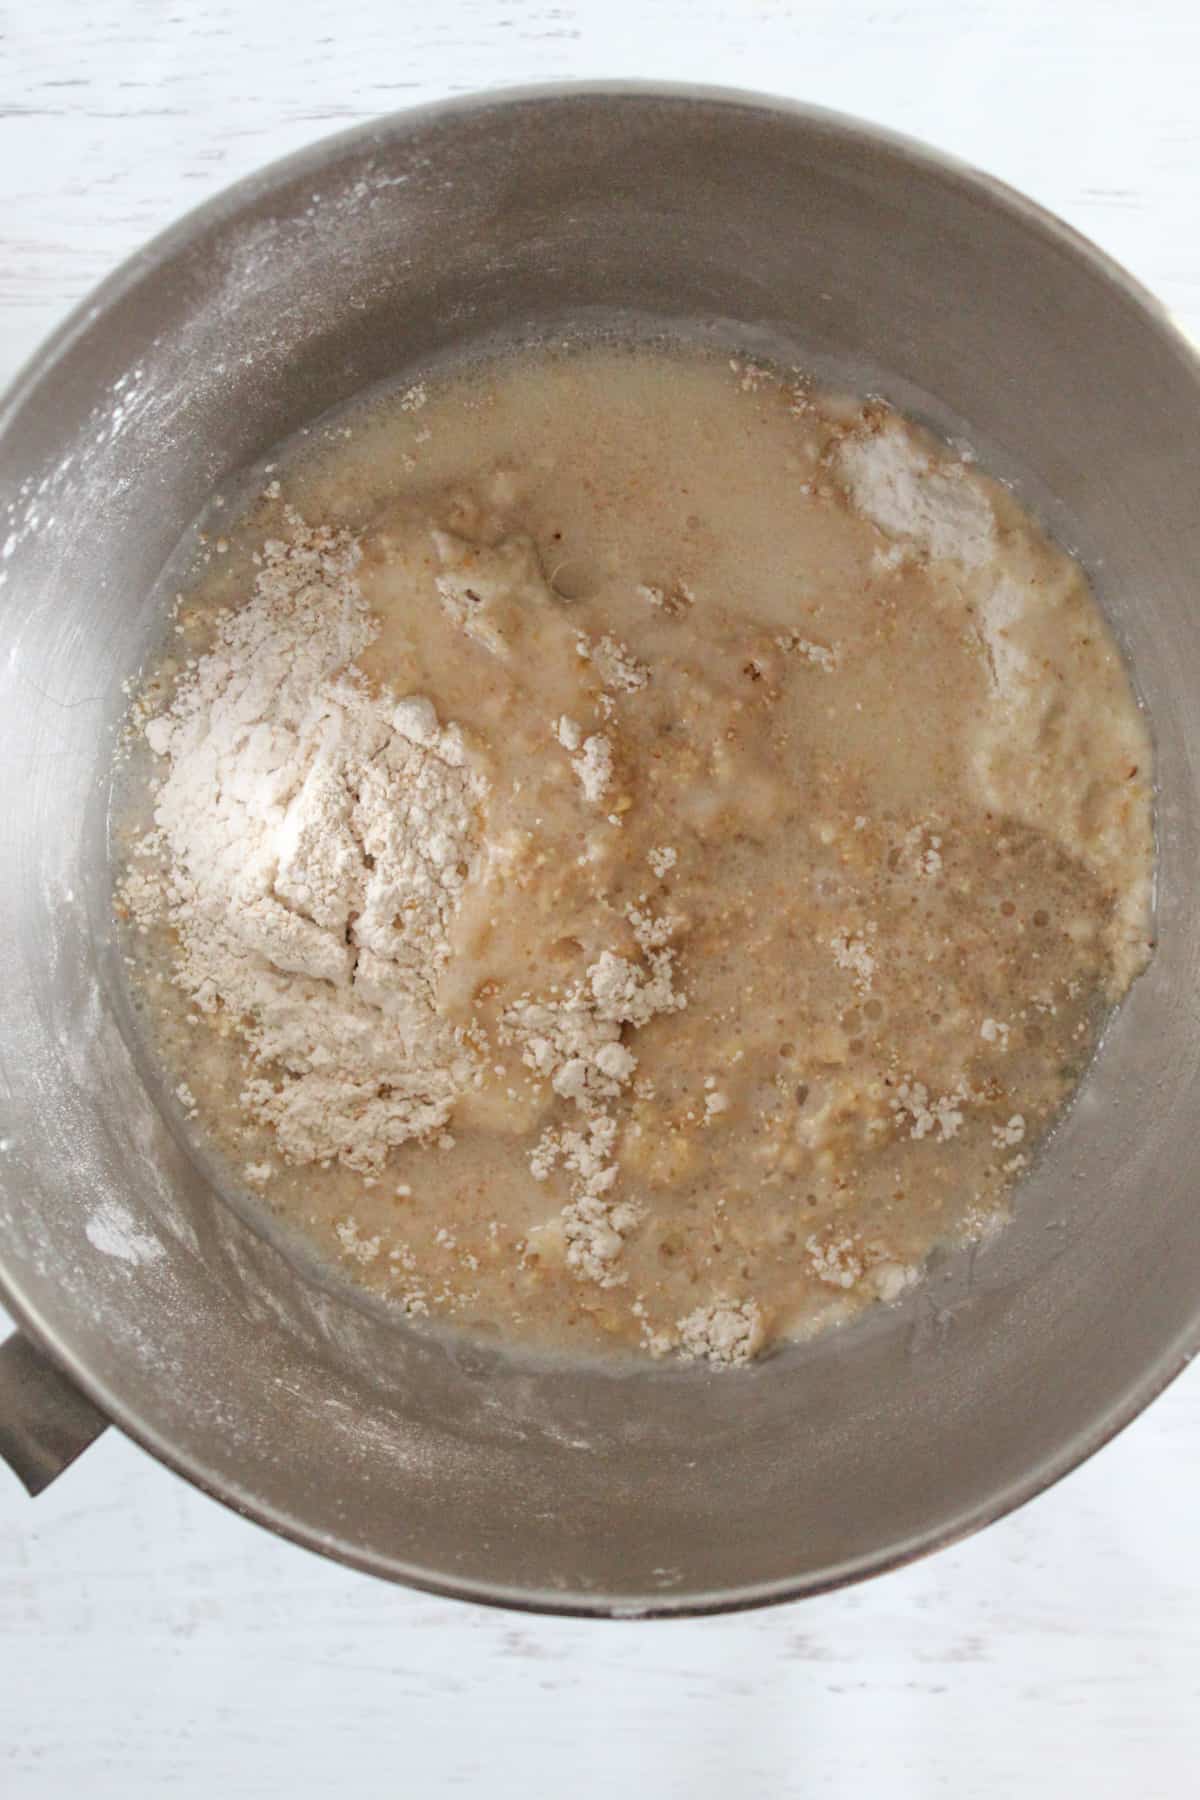 adding liquid to a flour mixture in a bowl